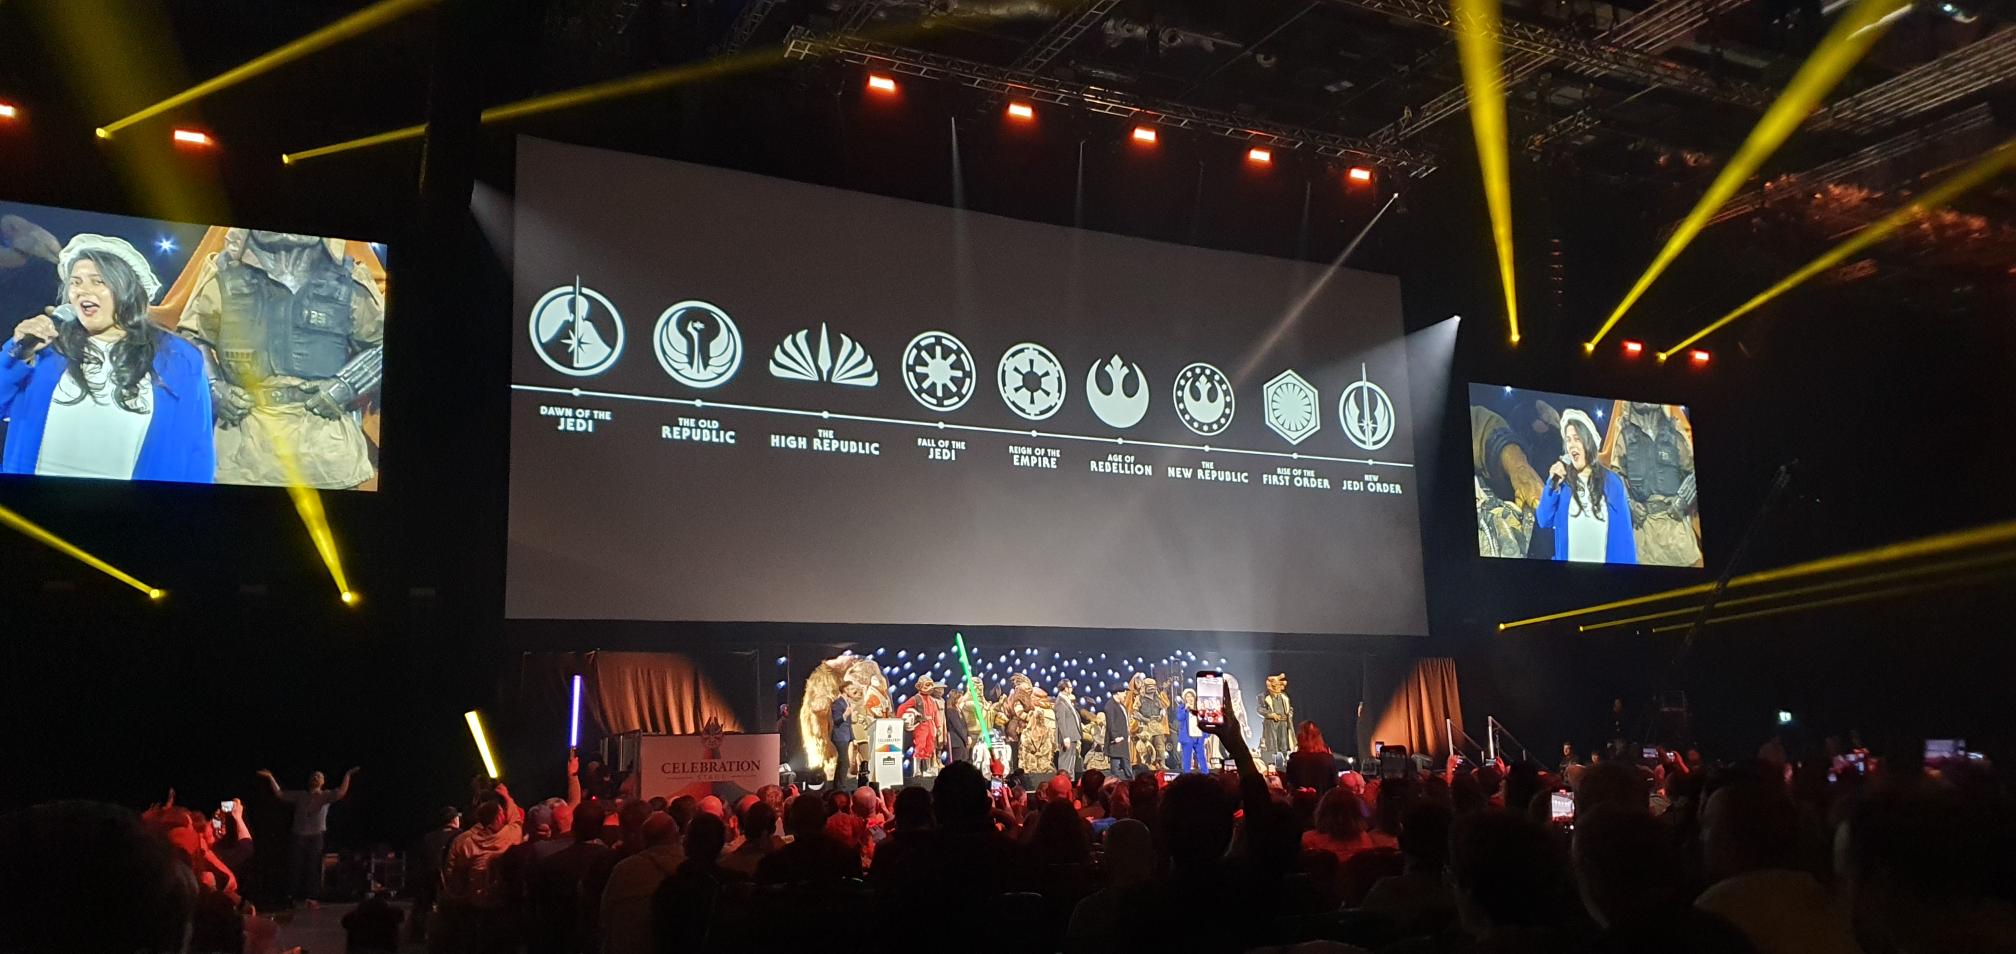 Dawn of the Jedi Star Wars Timeline